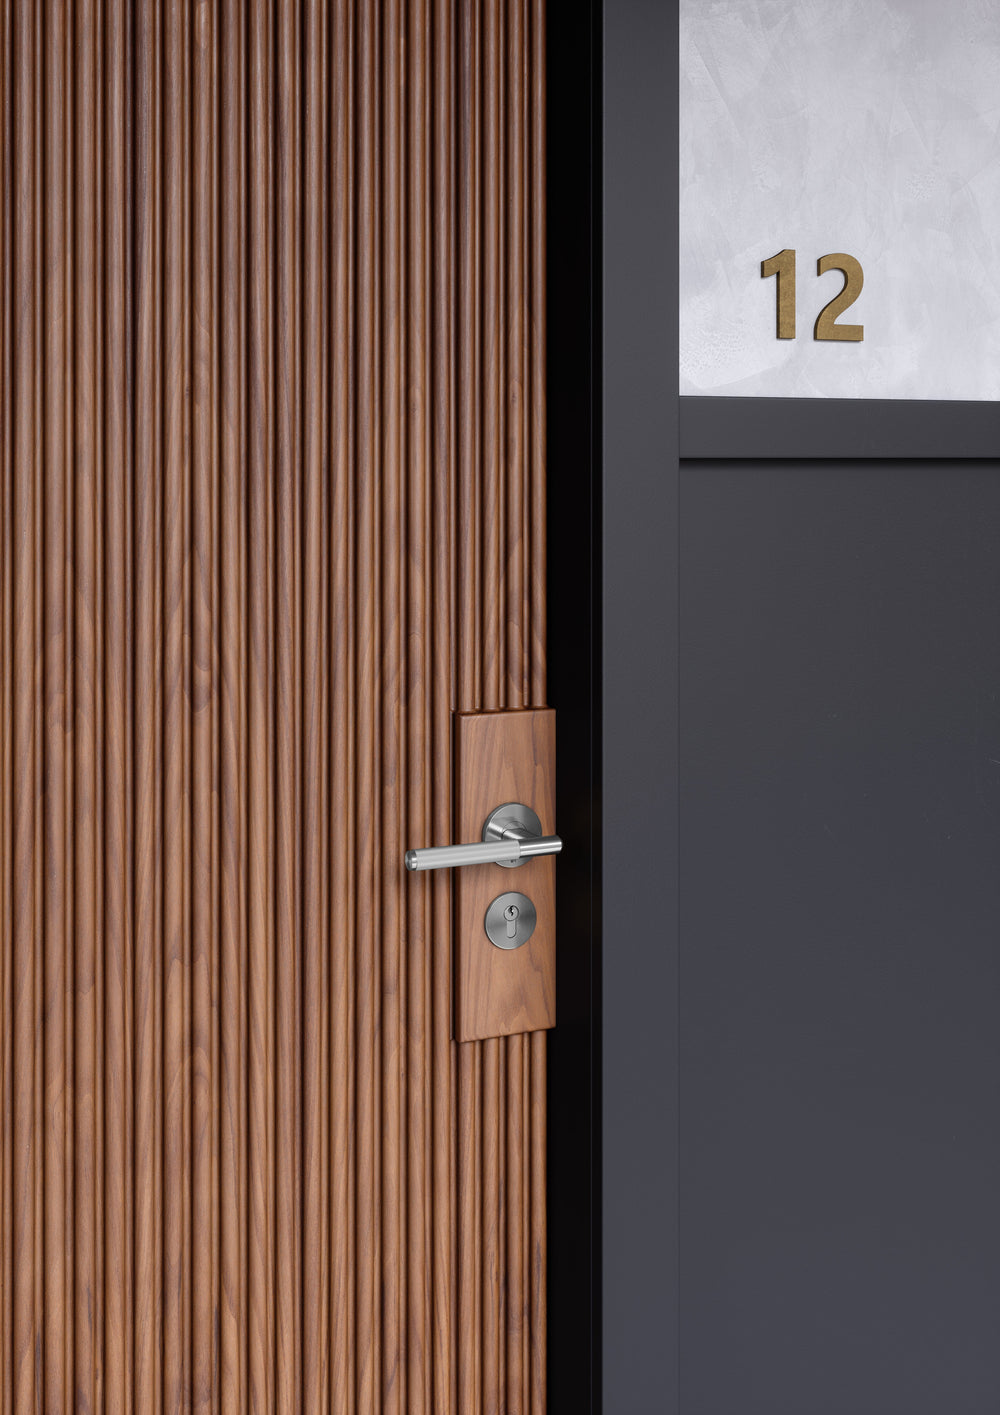 Dörrhandtag i rostfritt stål i en rå och exklusiv look med linjerat mönster. Här visas dörrhandtaget monterat på en trädörr.